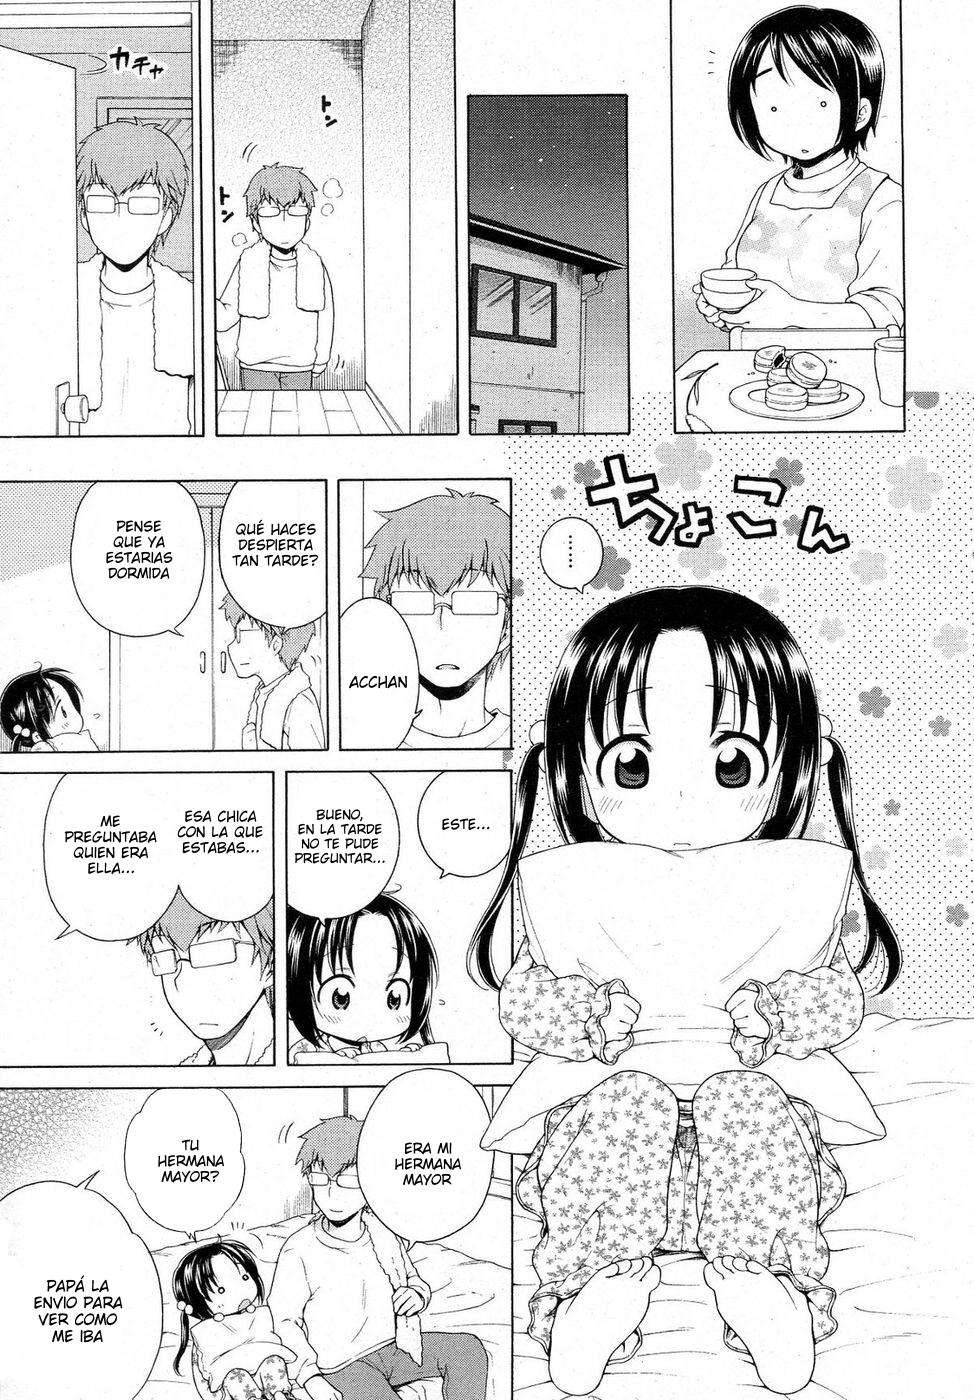 Tsukimisou No Akari (La Luz Del Apartamento Tsukimi) Chapter-4 - 4